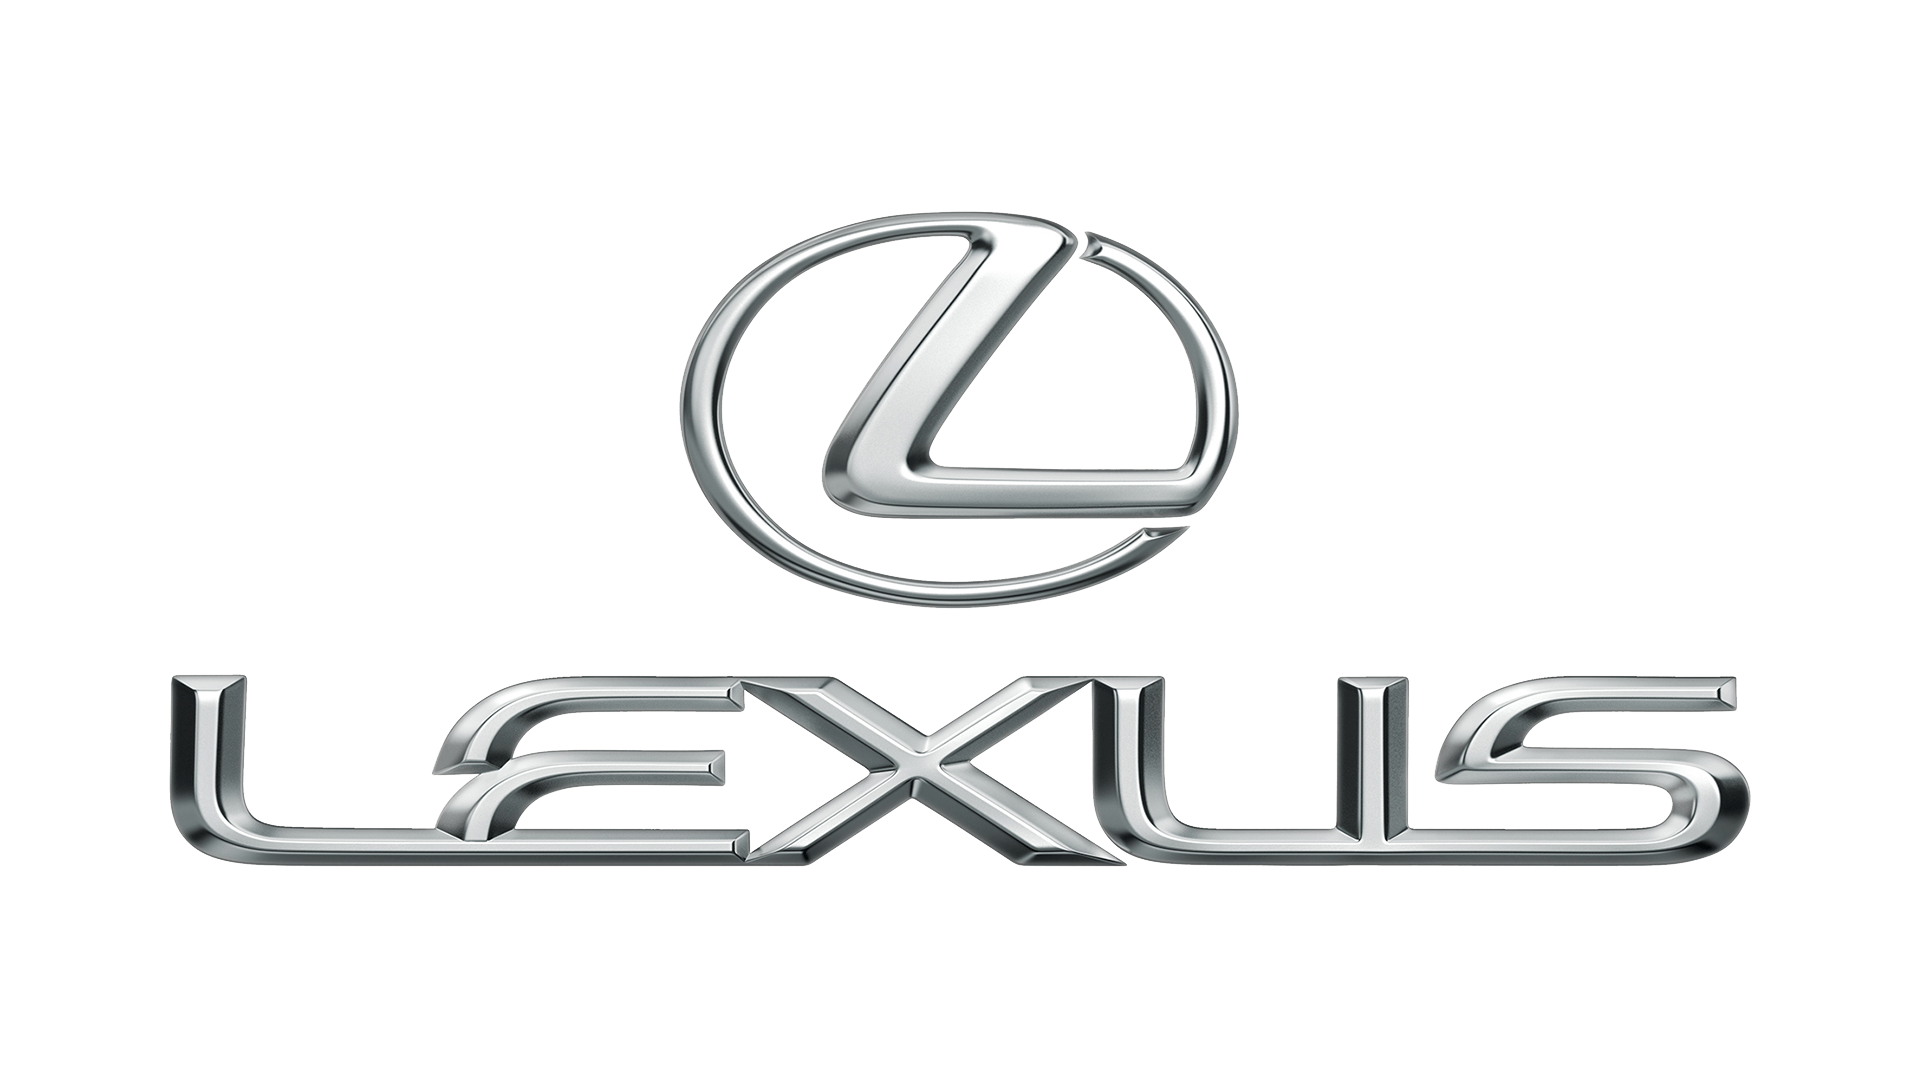 Lexus VIN Decoder